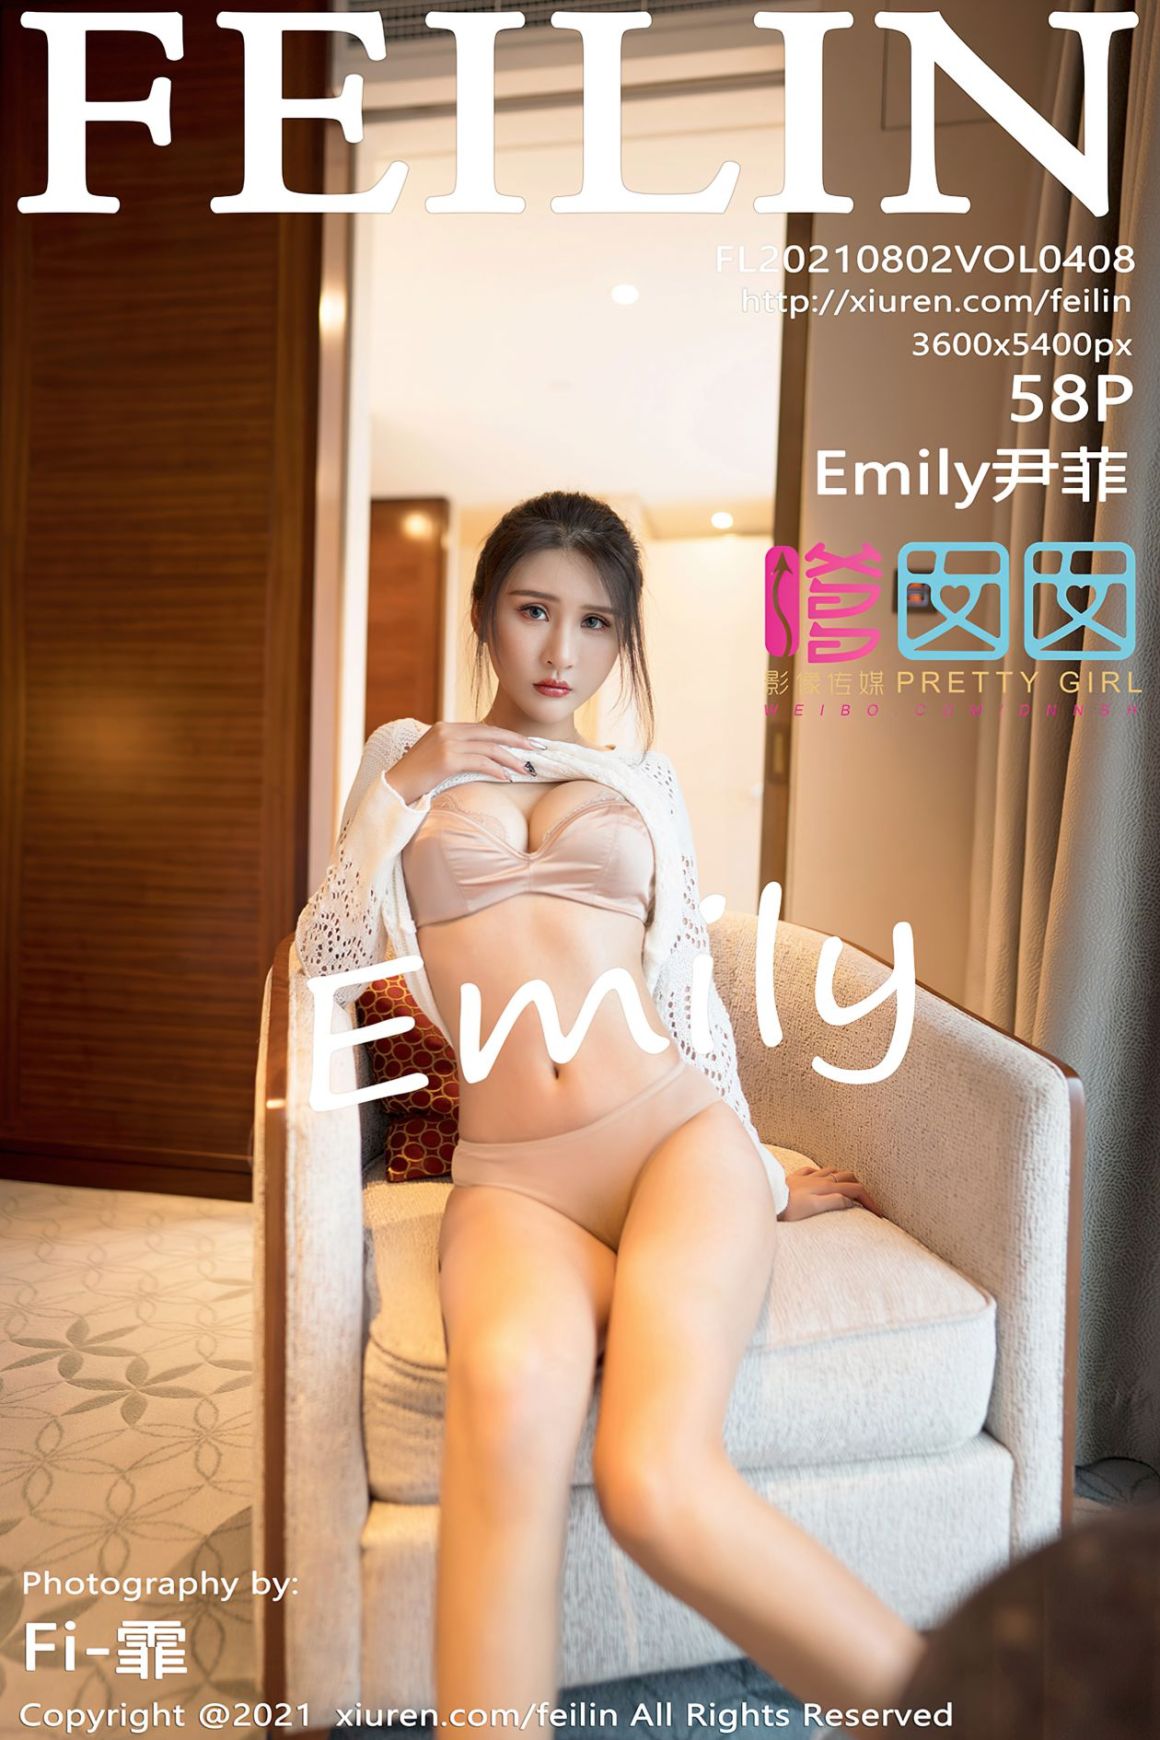 Onlyfans Vol.408 💝ASIAN FEILIN Leaked Emily尹菲 MOMOLAND Nancy